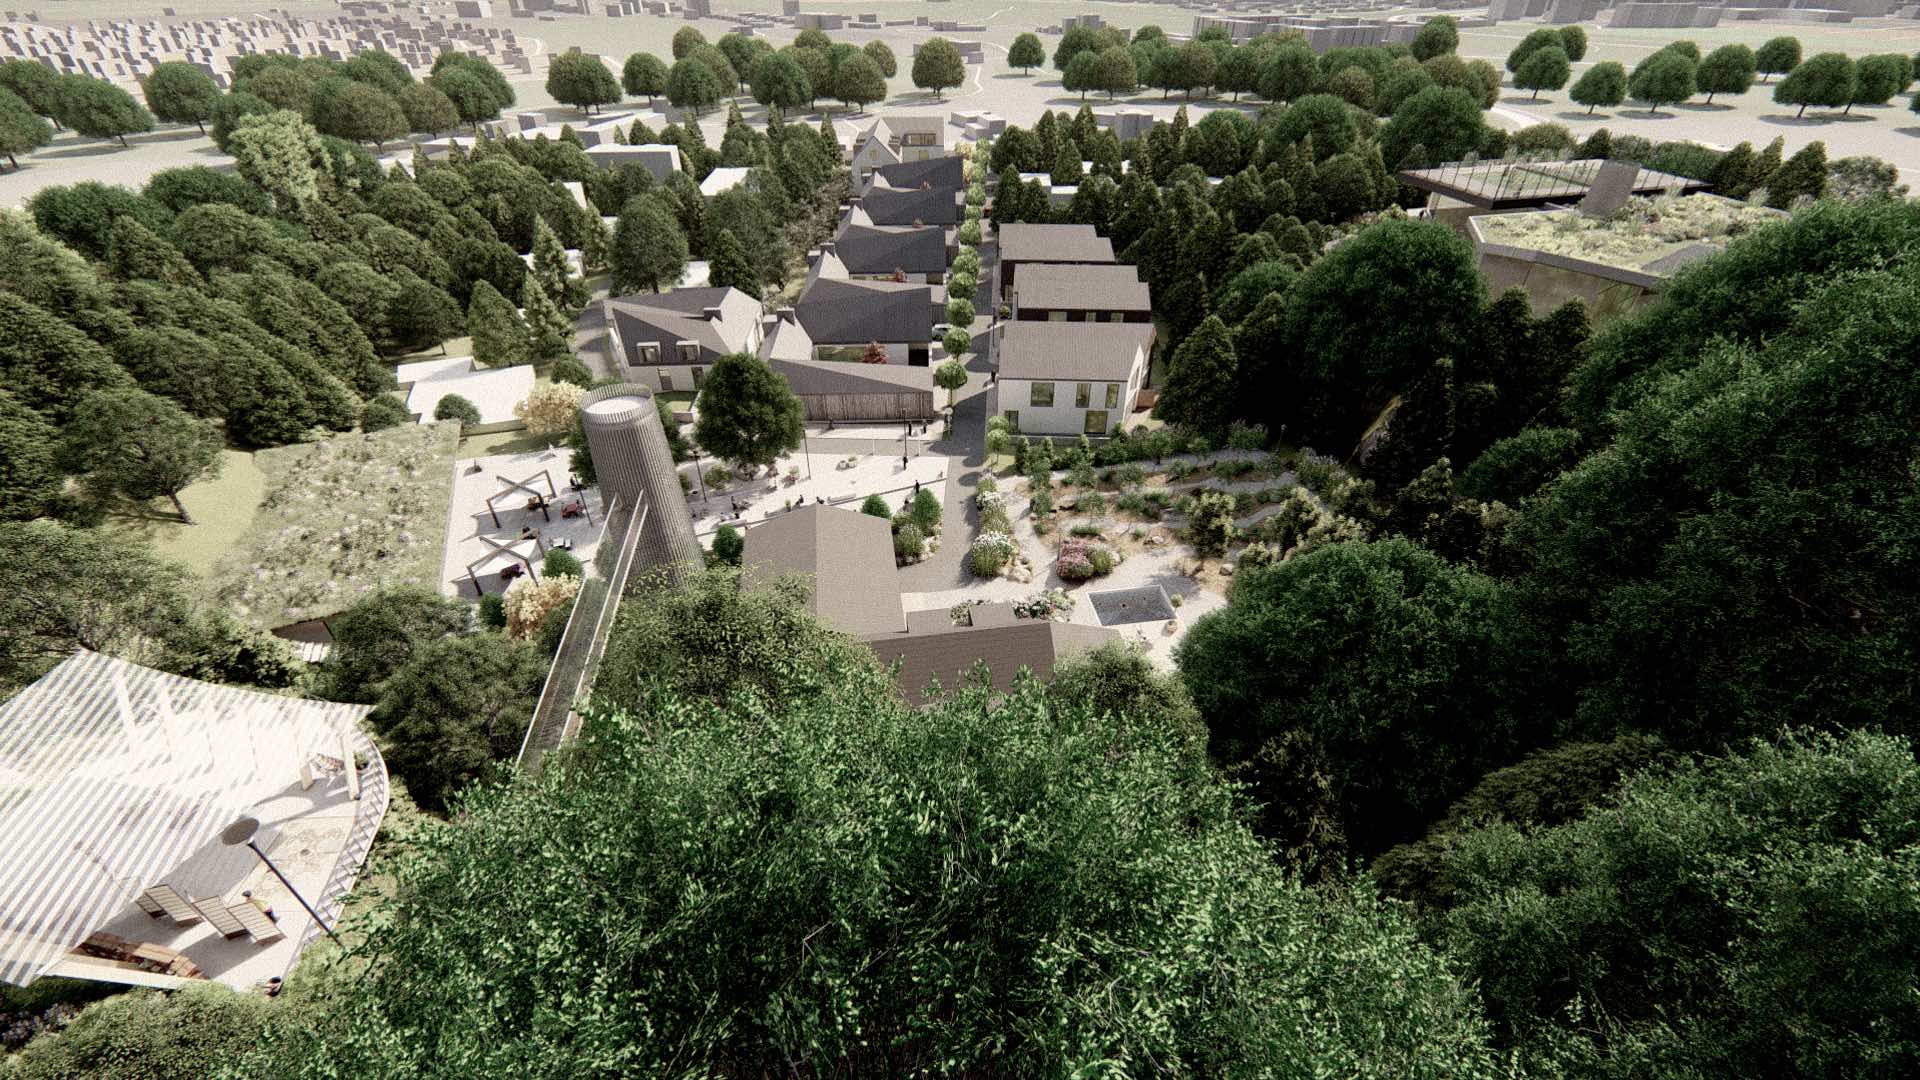 Vizualizace rezidenčního komplexu Jenerálka KKCG - ptačí pohled. Autor: Kurz architekti 